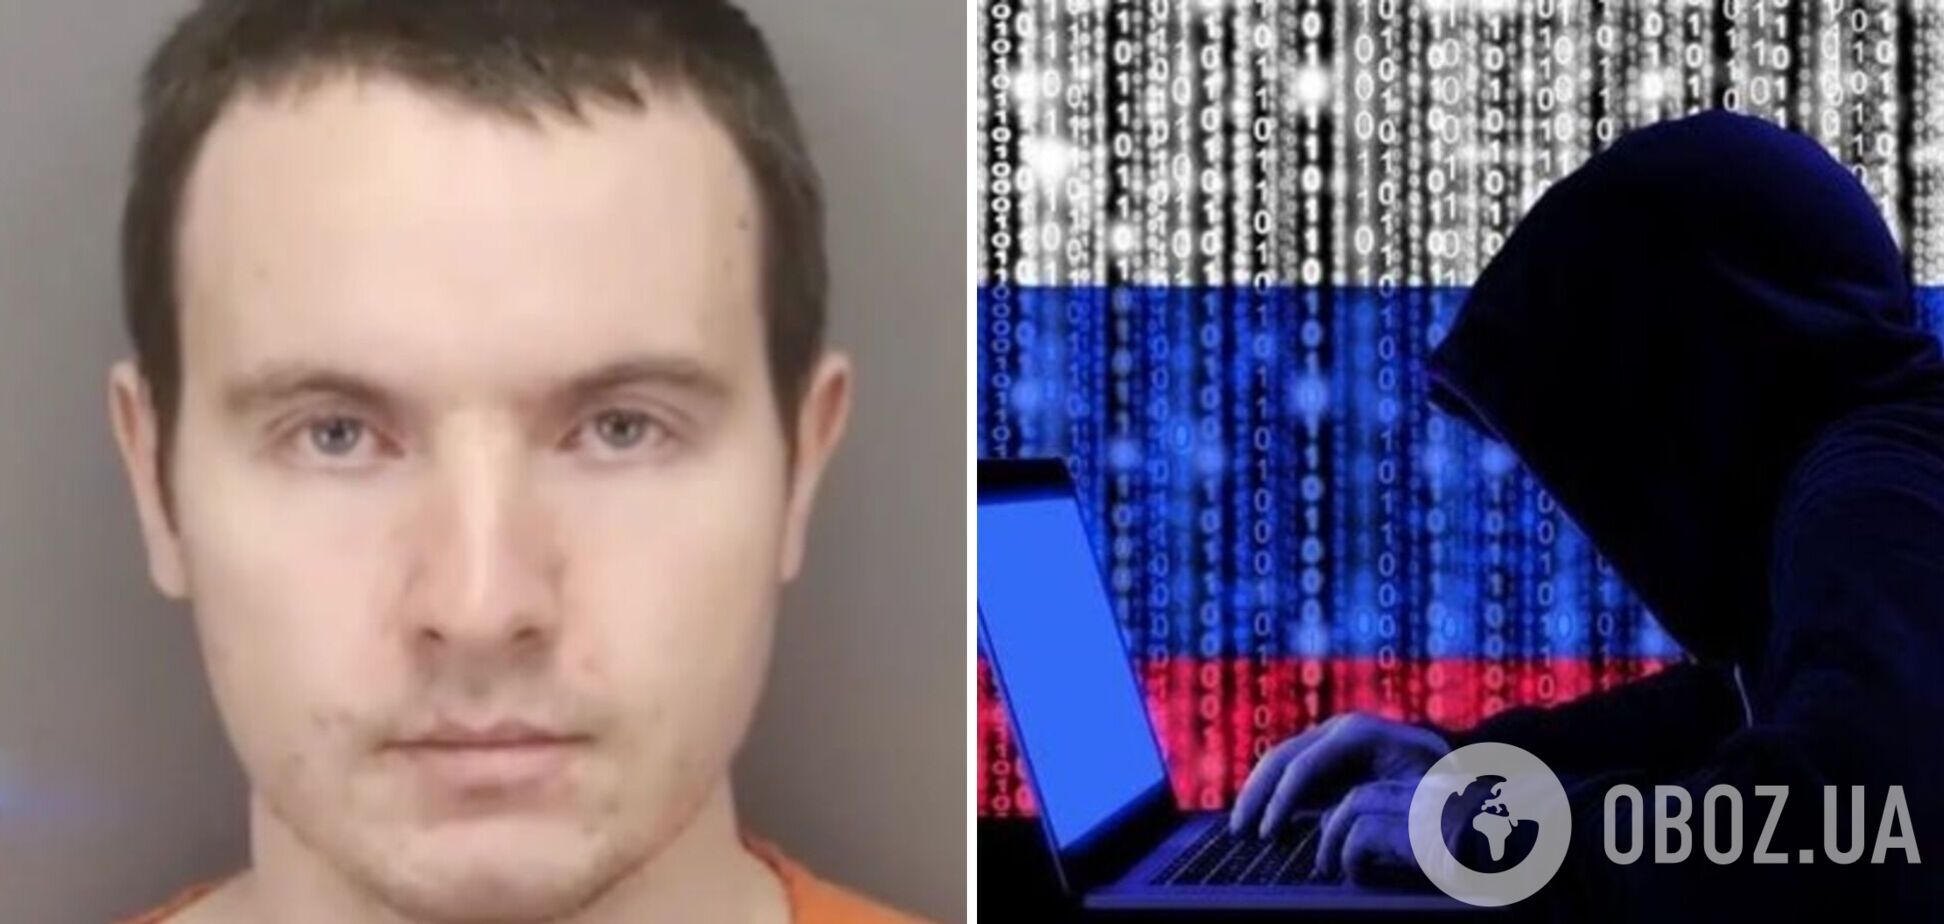 Грузия выслала российского хакера в США по запросу ФБР. Что о нем известно